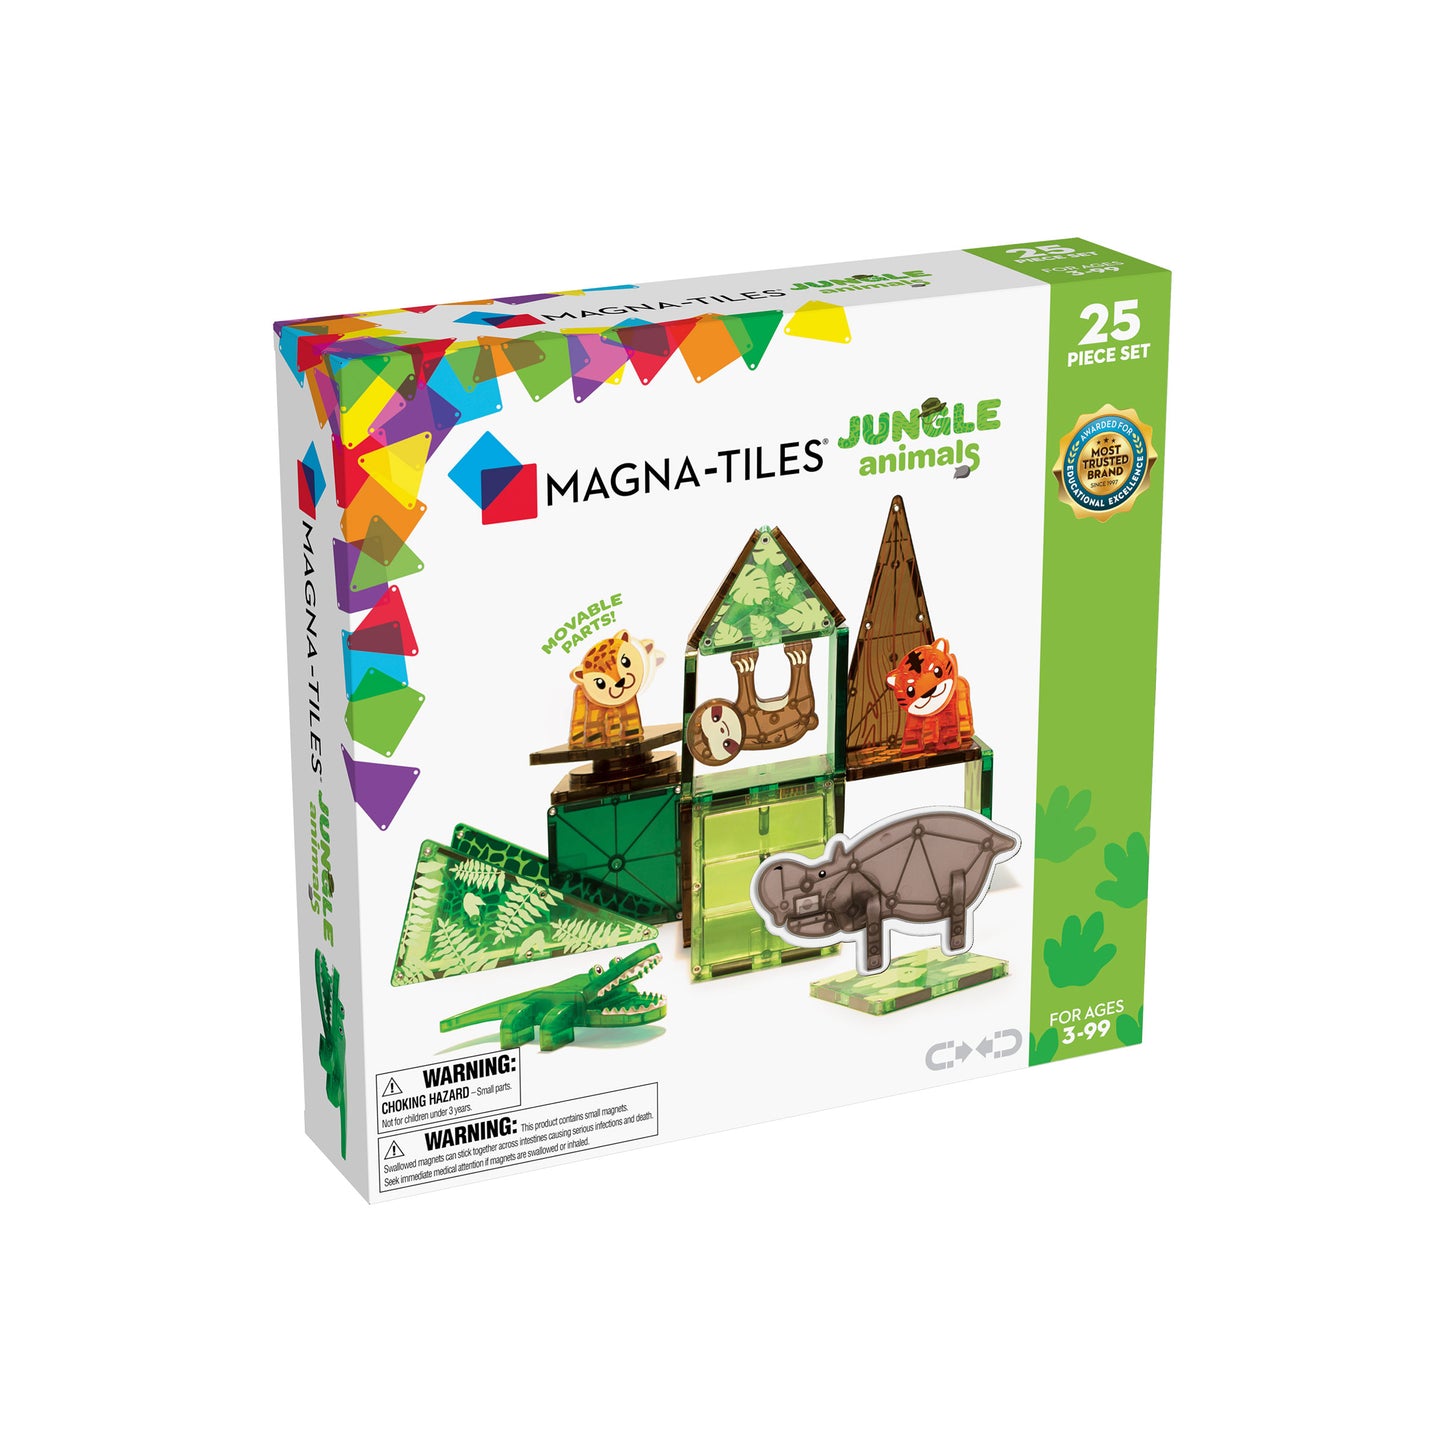 Magna-Tiles – Jungle Animals – 25 Piece Set